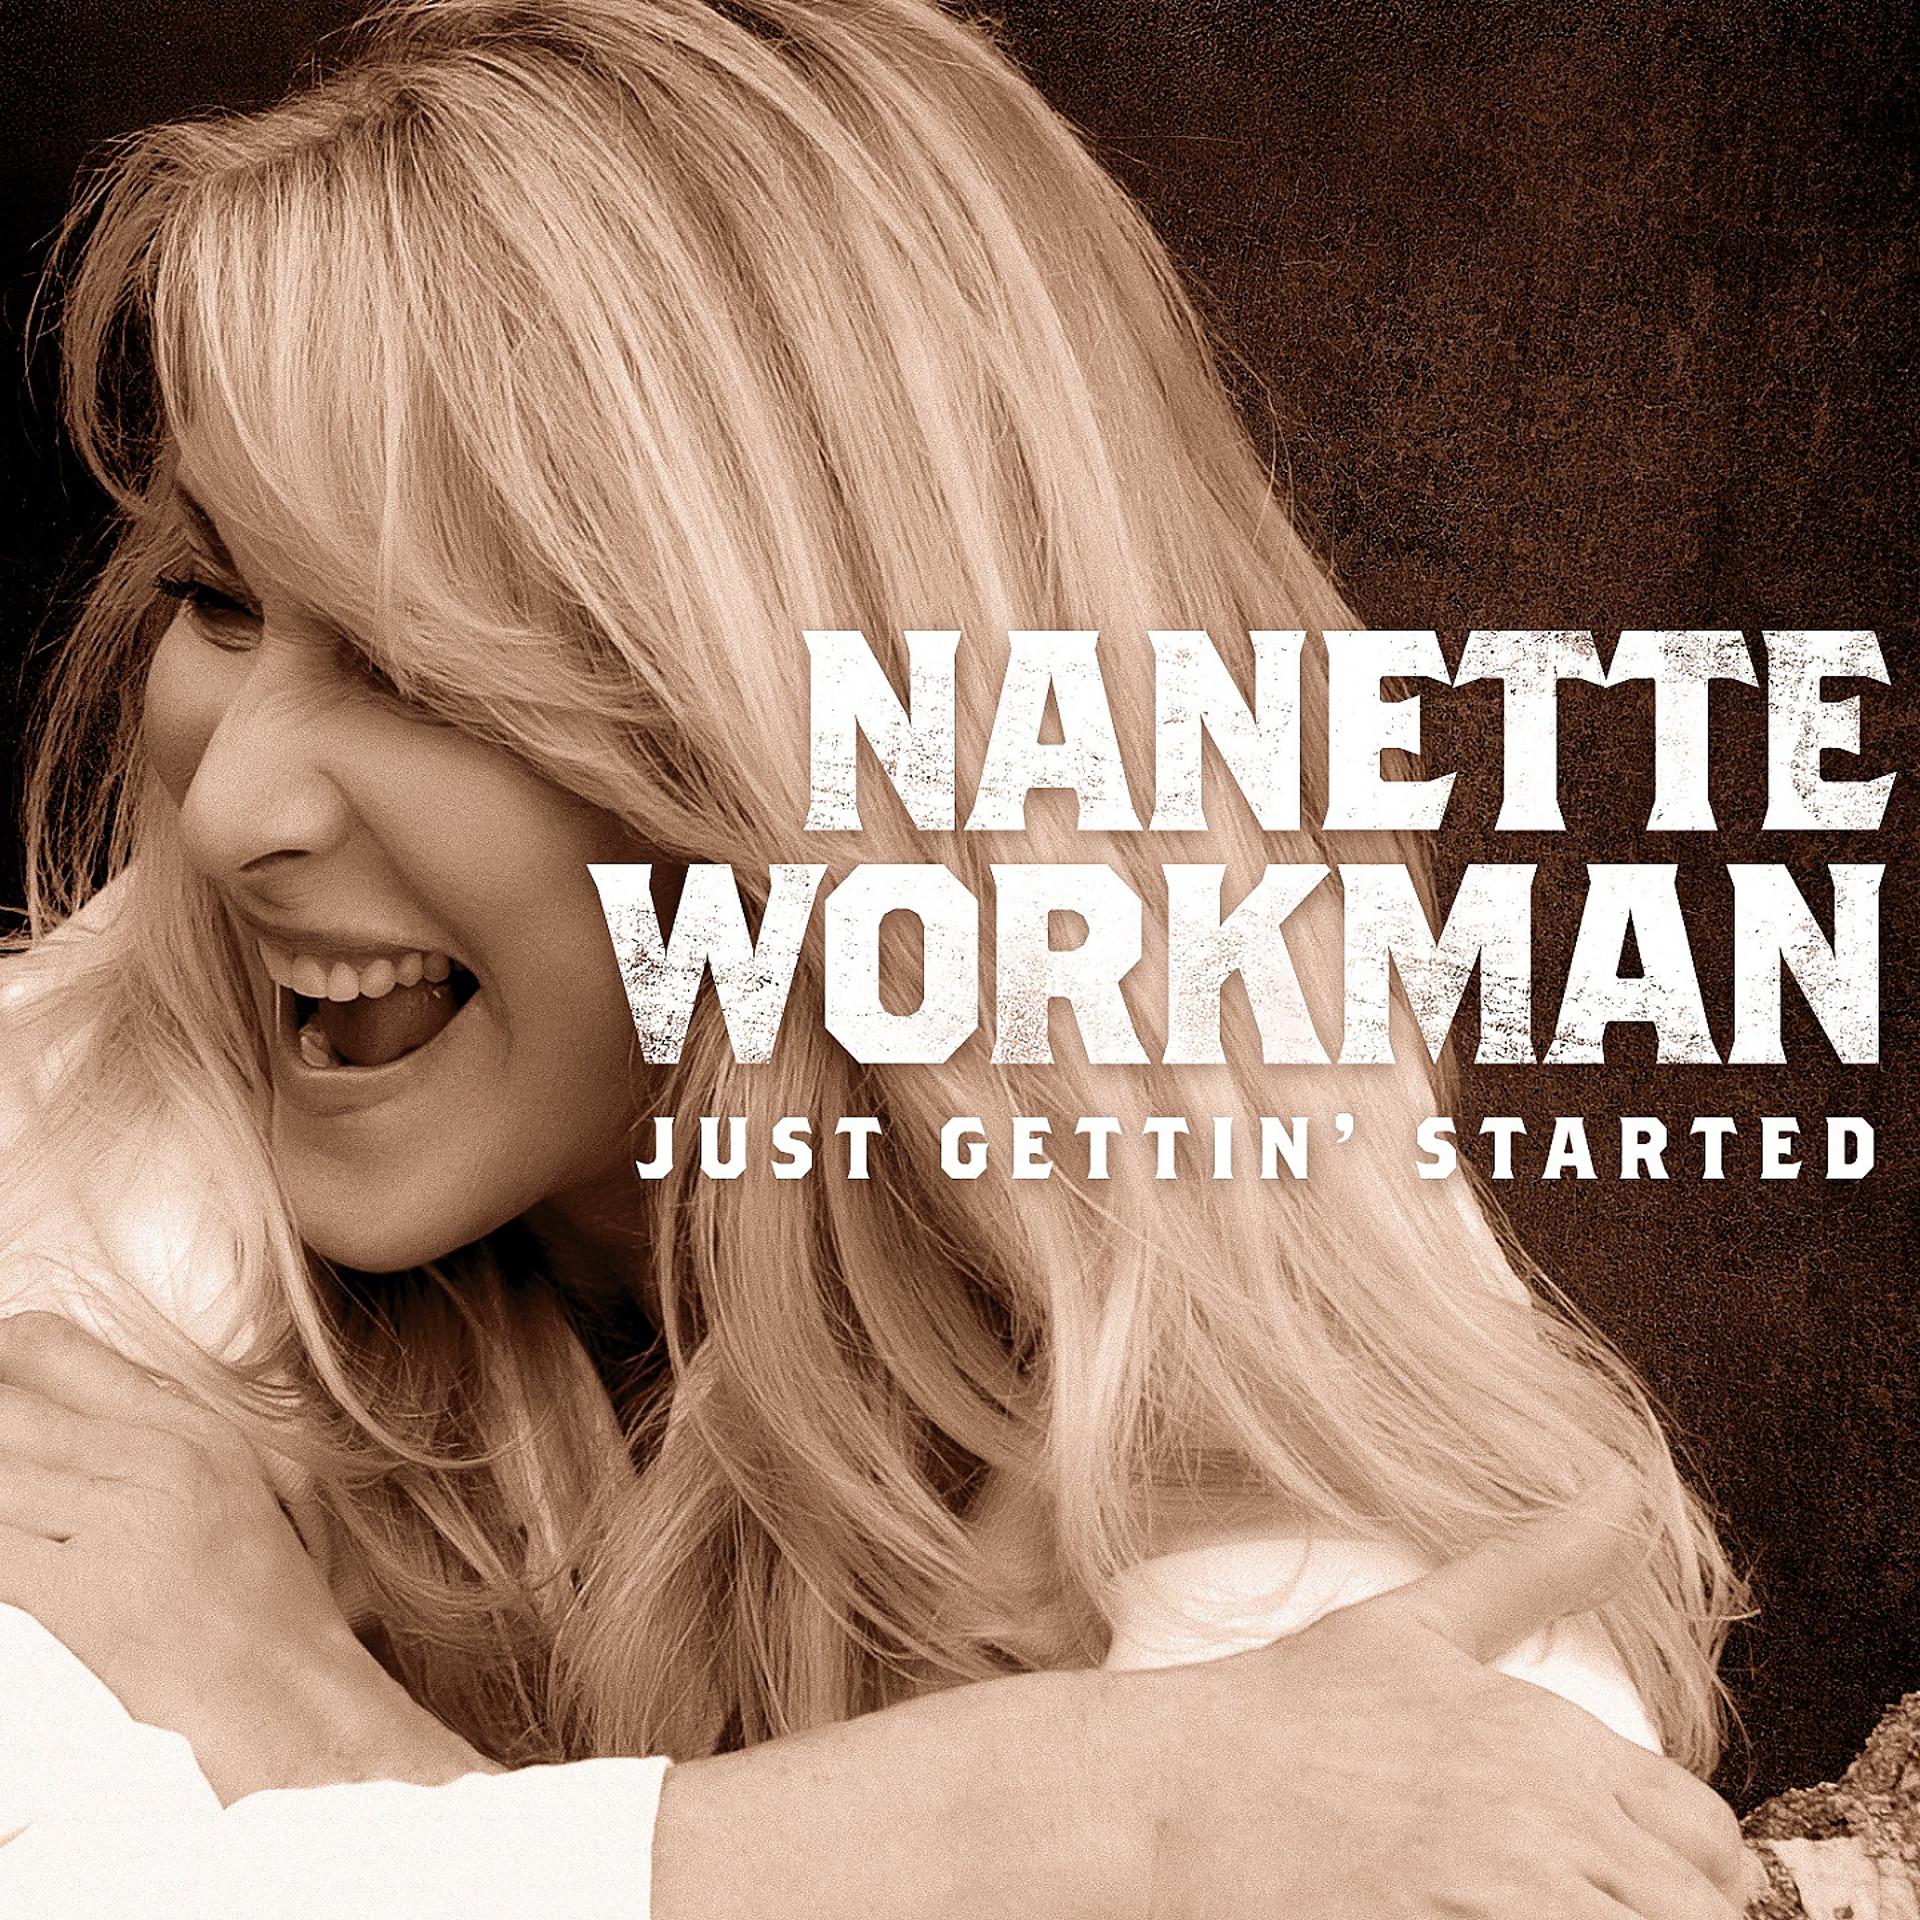 Starting cd. Nanette Workman. Nanette Workman (+)(20.11.1945 - )(USA). Nanette. Анджелы Воркман песня.